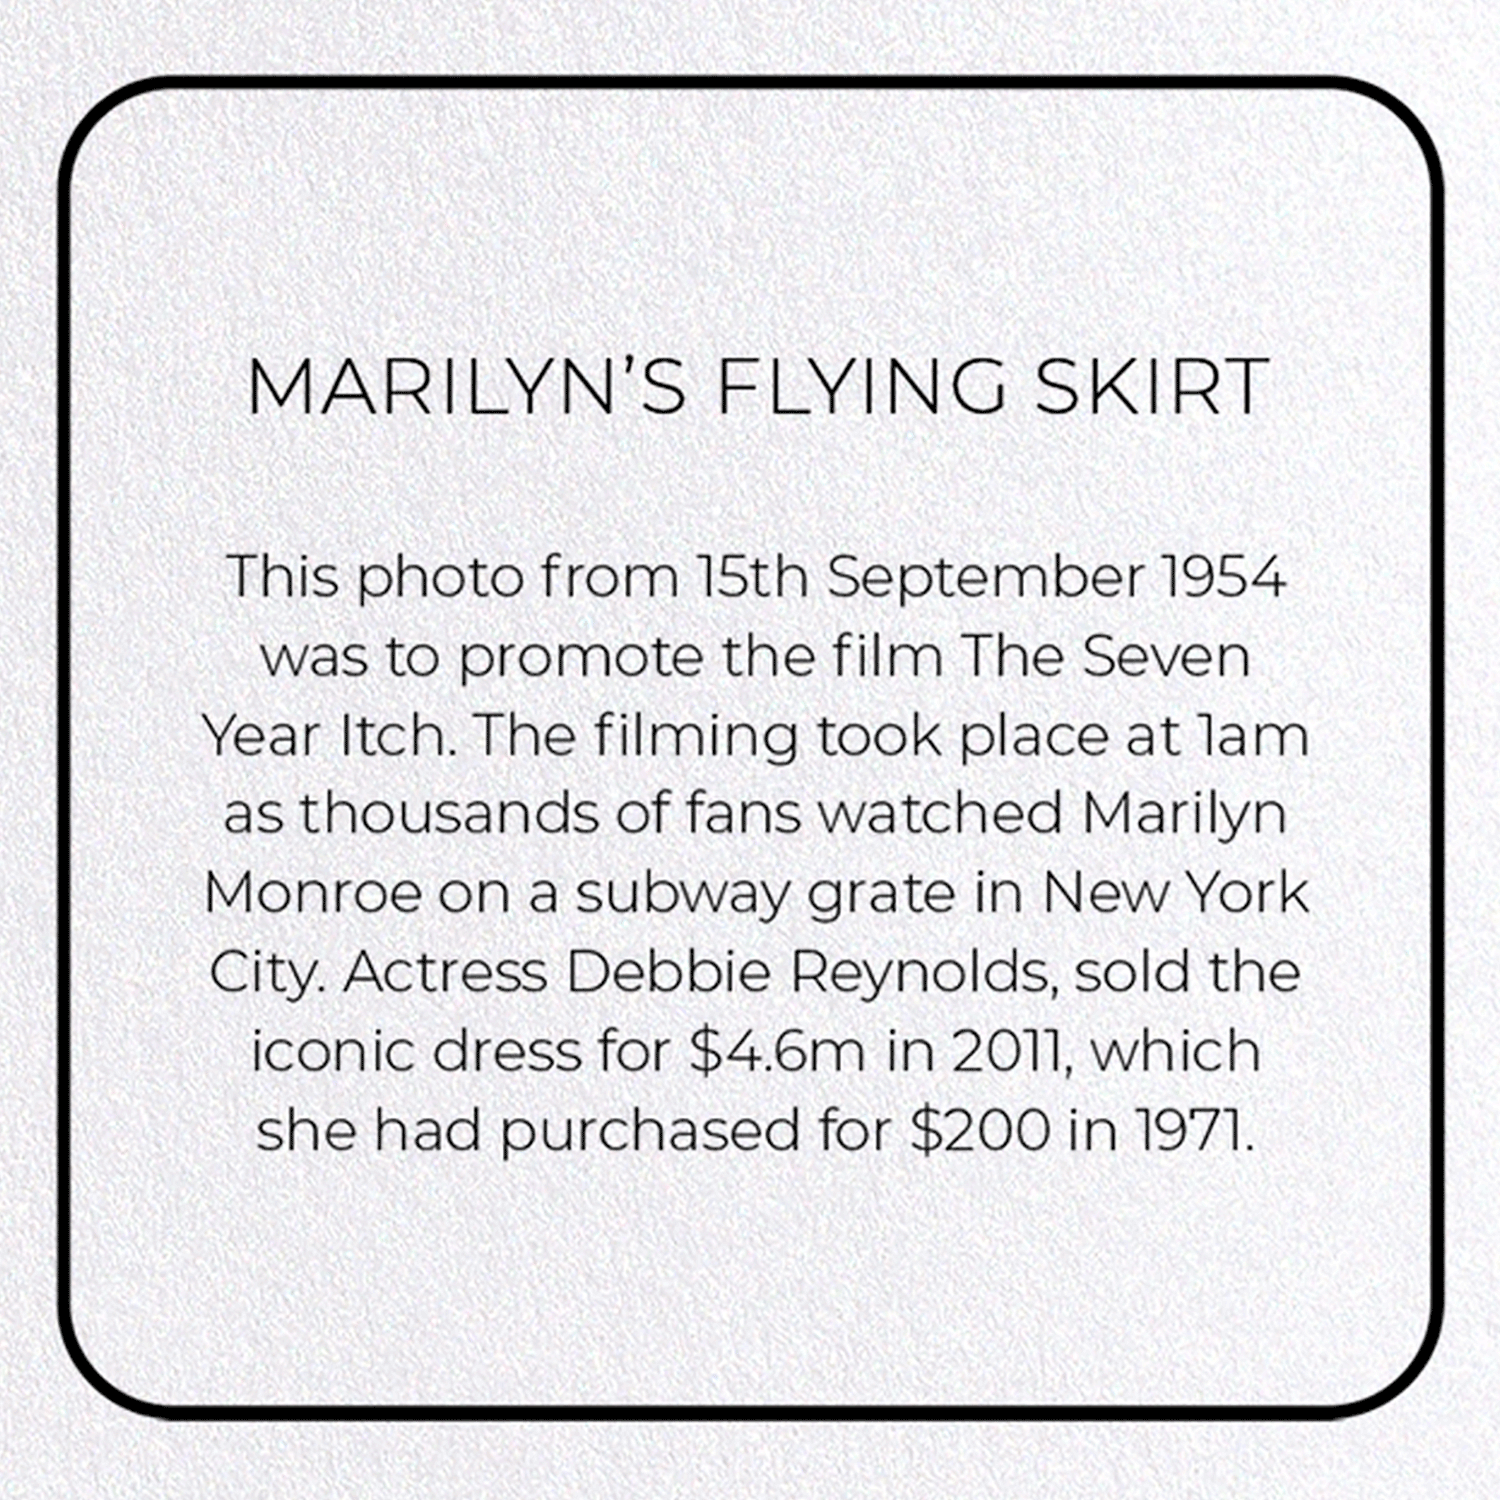 MARILYN'S FLYING SKIRT